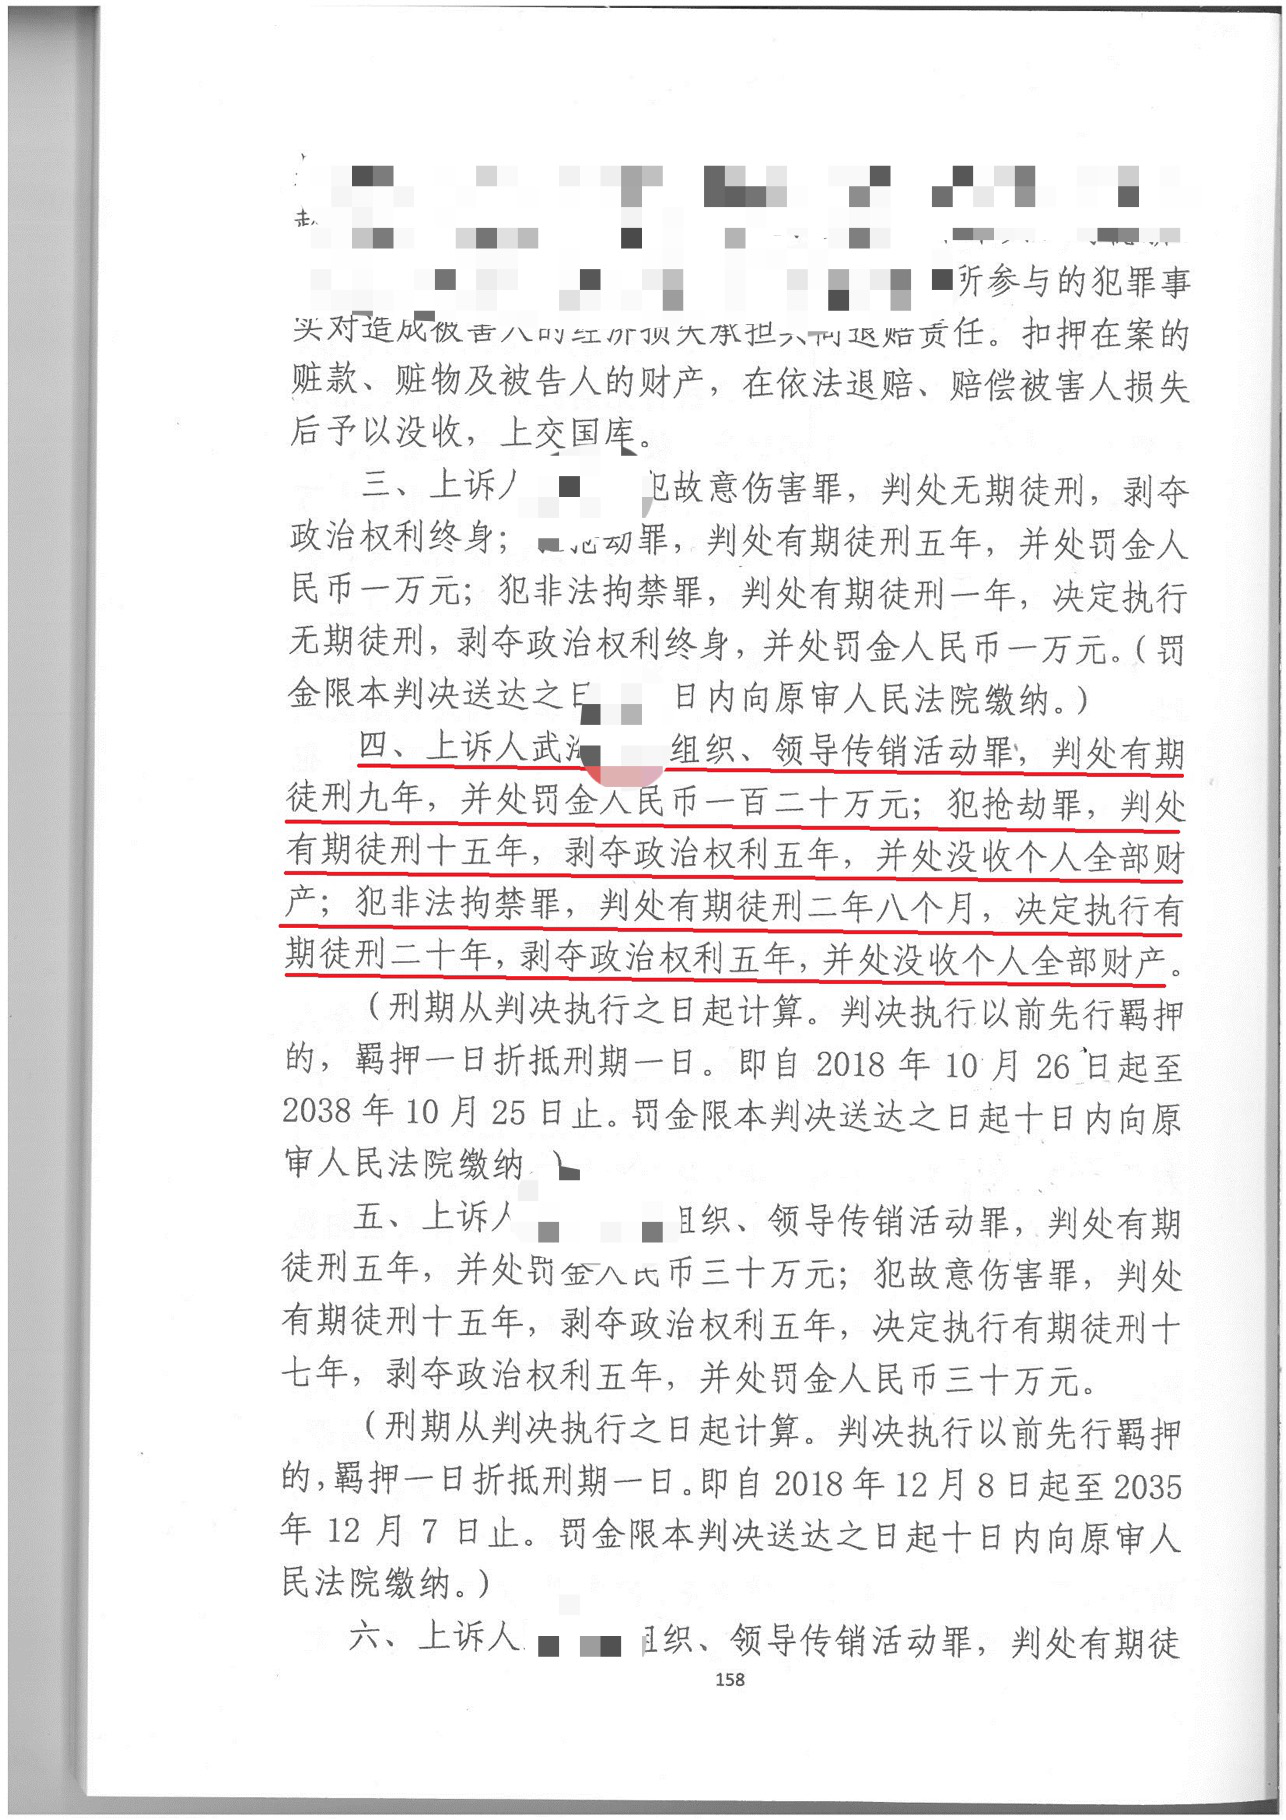 李友涛律师成功办理一起涉黑案件一审去黑二审改判有期